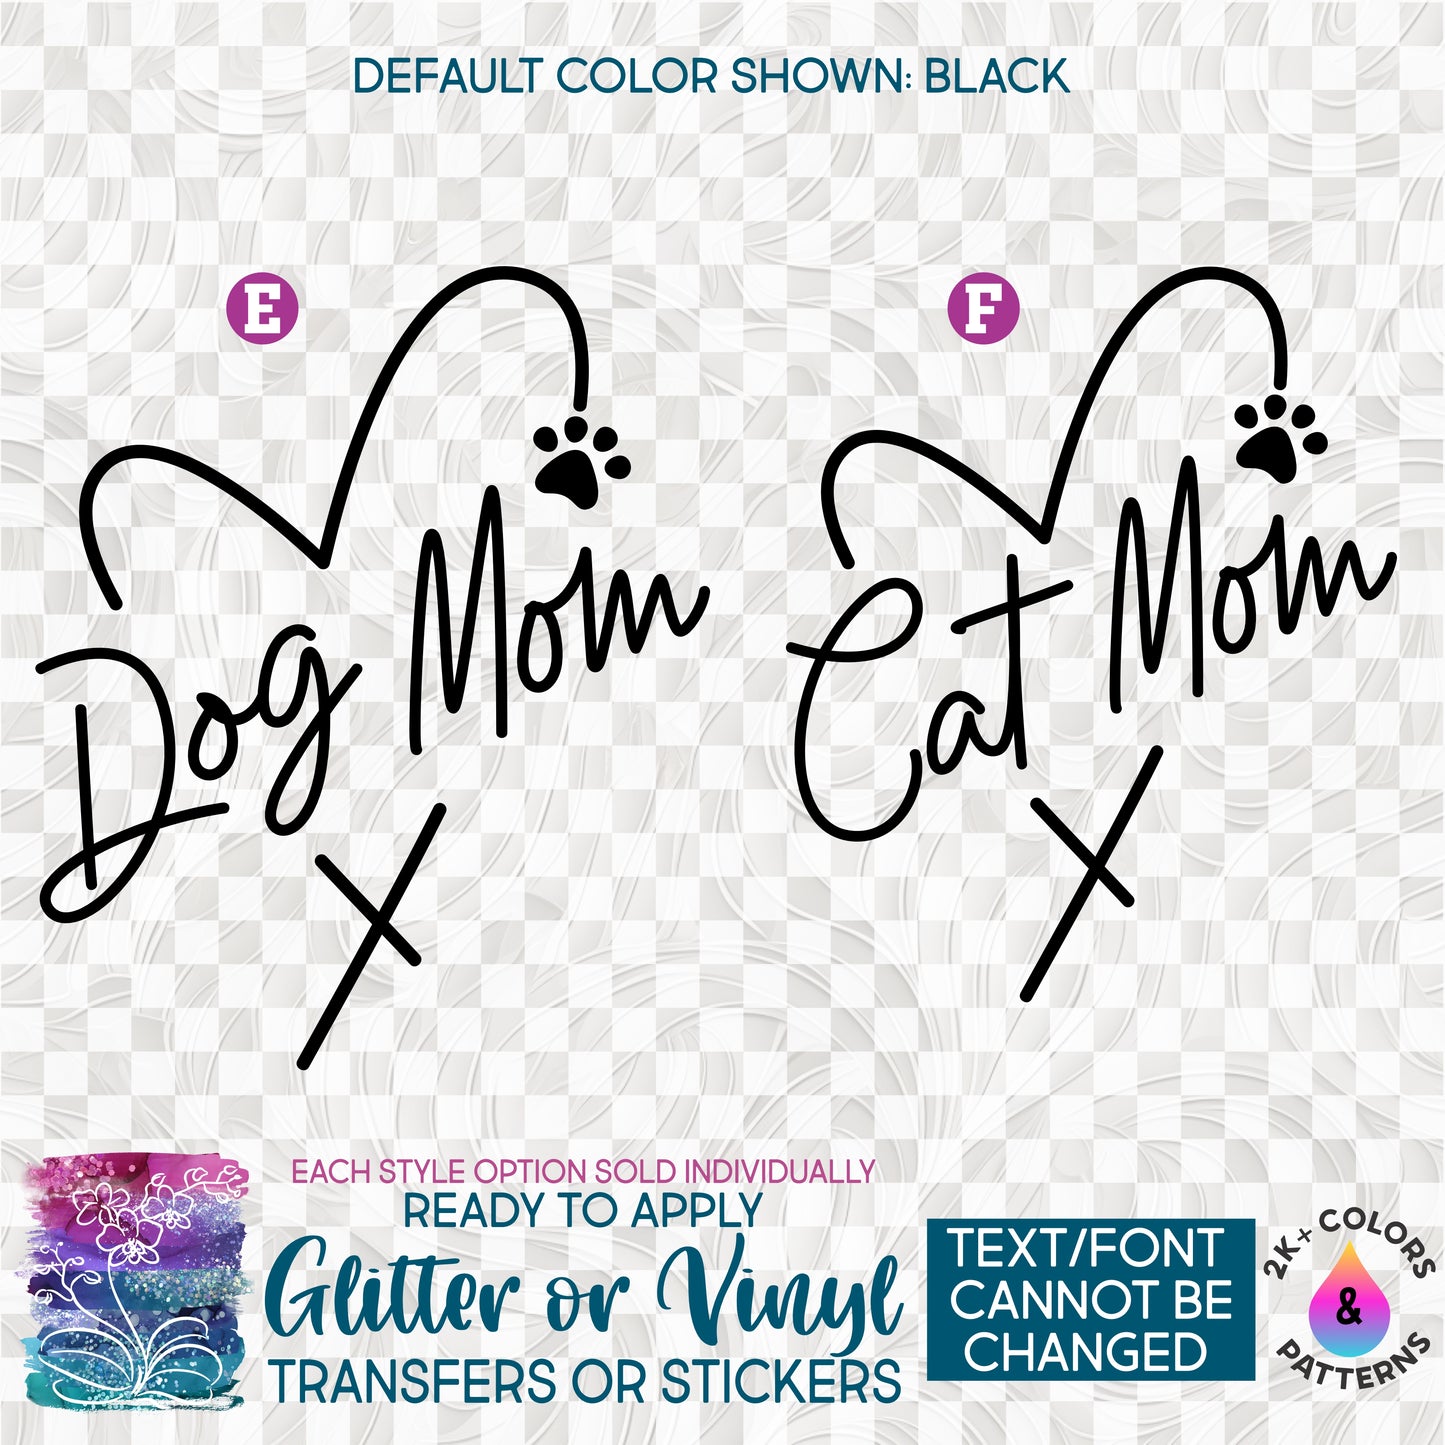 (s357-1) Dog Mom, Cat Mom Heart Glitter or Vinyl Iron-On Transfer or Sticker